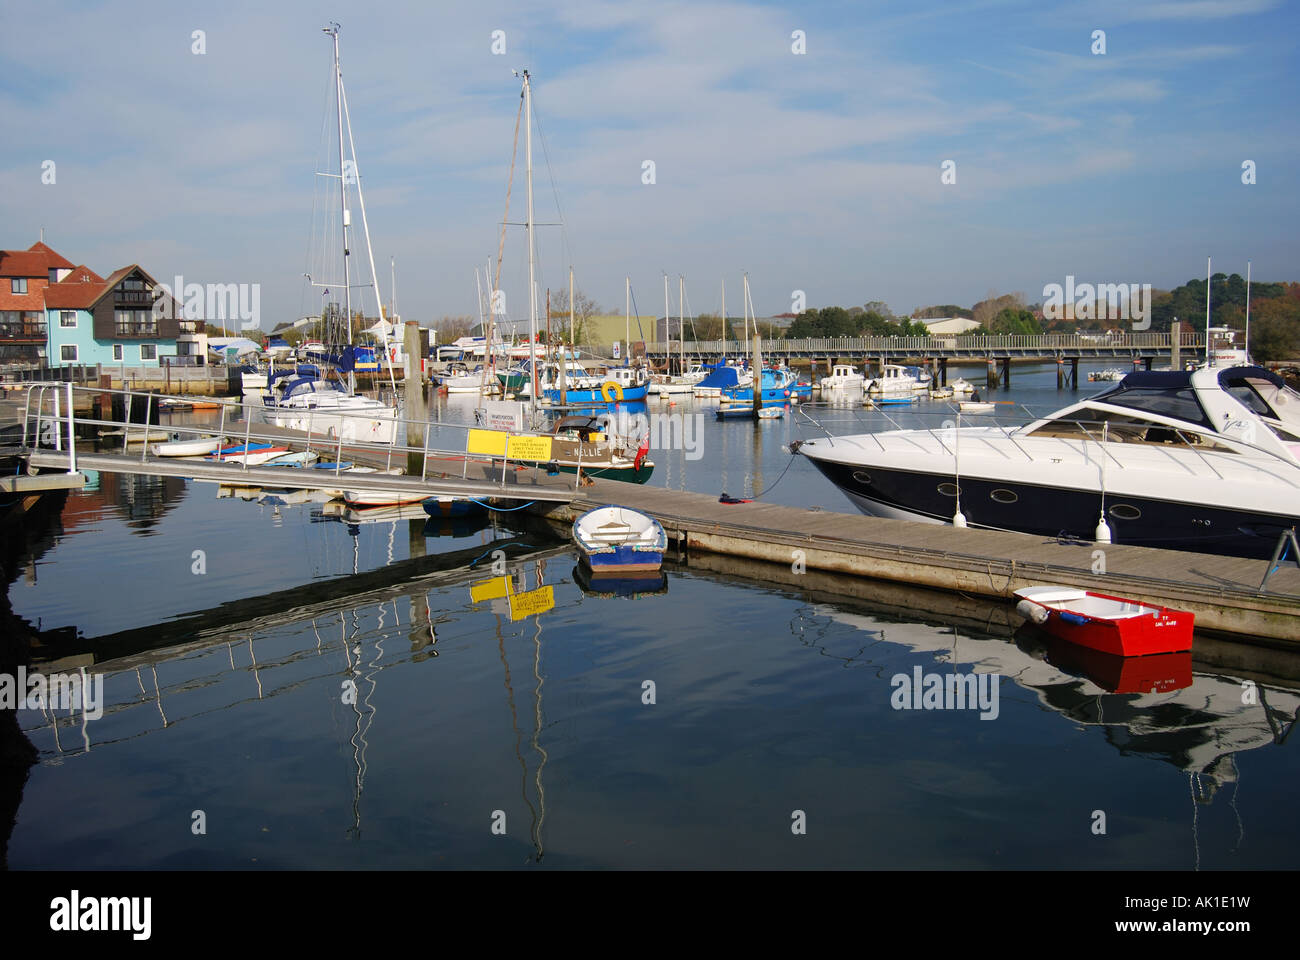 Port de Lymington, Lymington, Hampshire, Angleterre, Royaume-Uni Banque D'Images